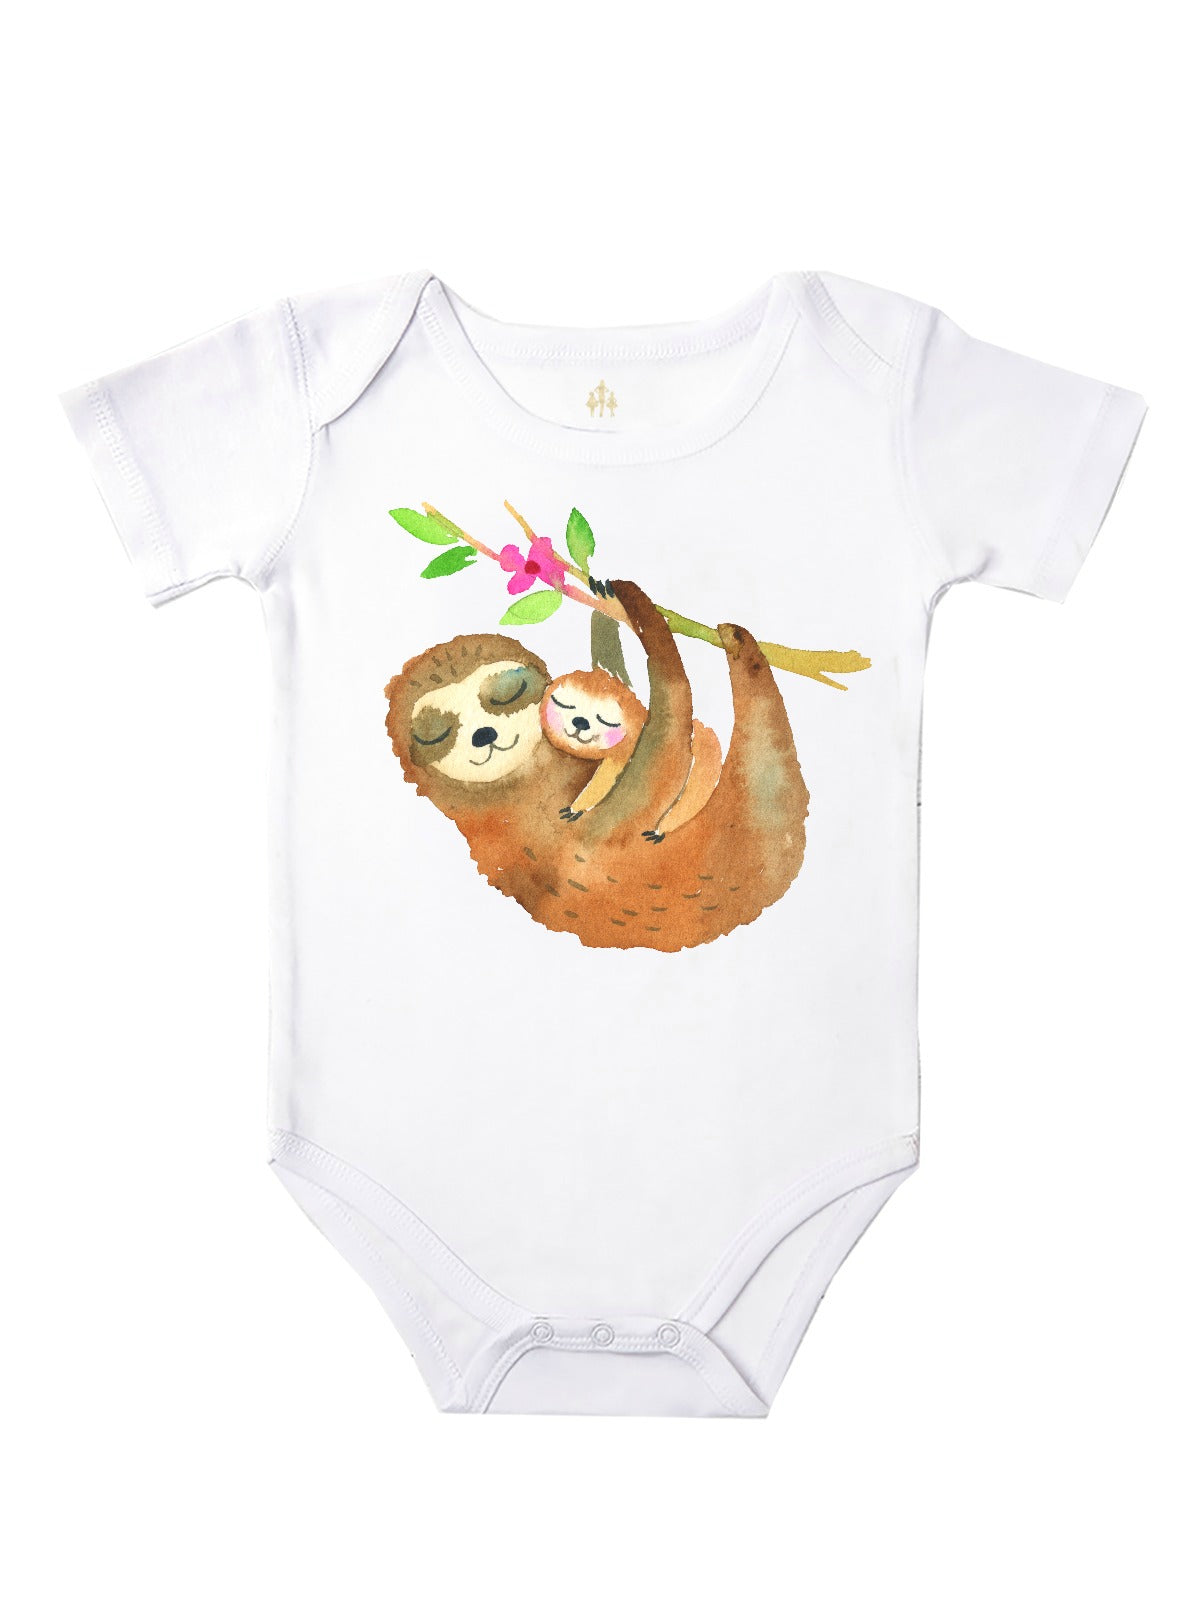 Sleepy Sloths Baby Bodysuit and Girl's T-Shirt